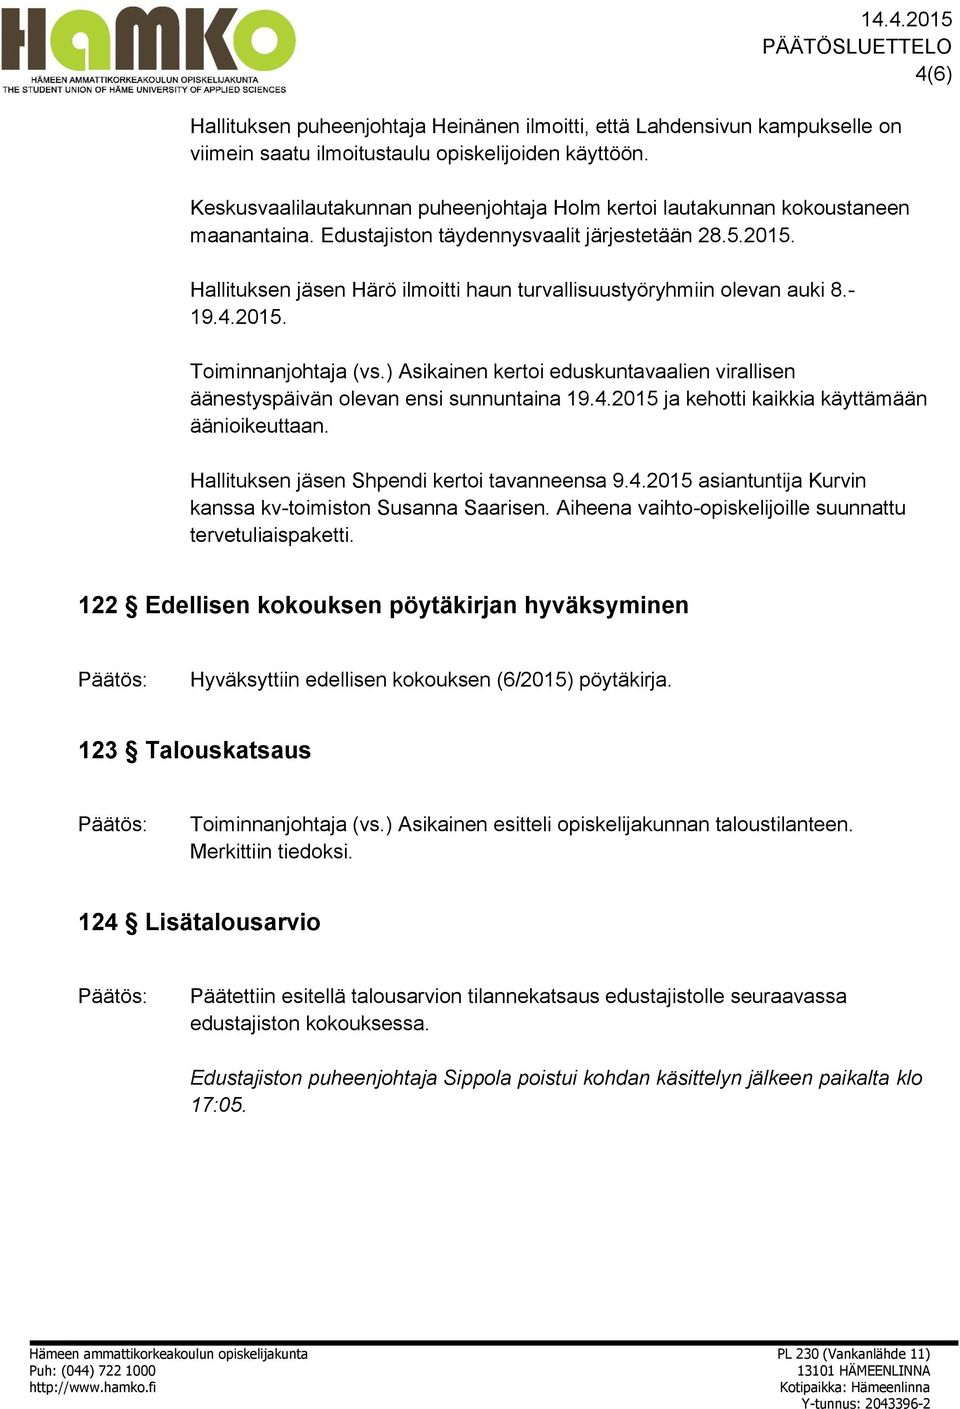 Hallituksen jäsen Härö ilmoitti haun turvallisuustyöryhmiin olevan auki 8.- 19.4.2015. Toiminnanjohtaja (vs.) Asikainen kertoi eduskuntavaalien virallisen äänestyspäivän olevan ensi sunnuntaina 19.4.2015 ja kehotti kaikkia käyttämään äänioikeuttaan.